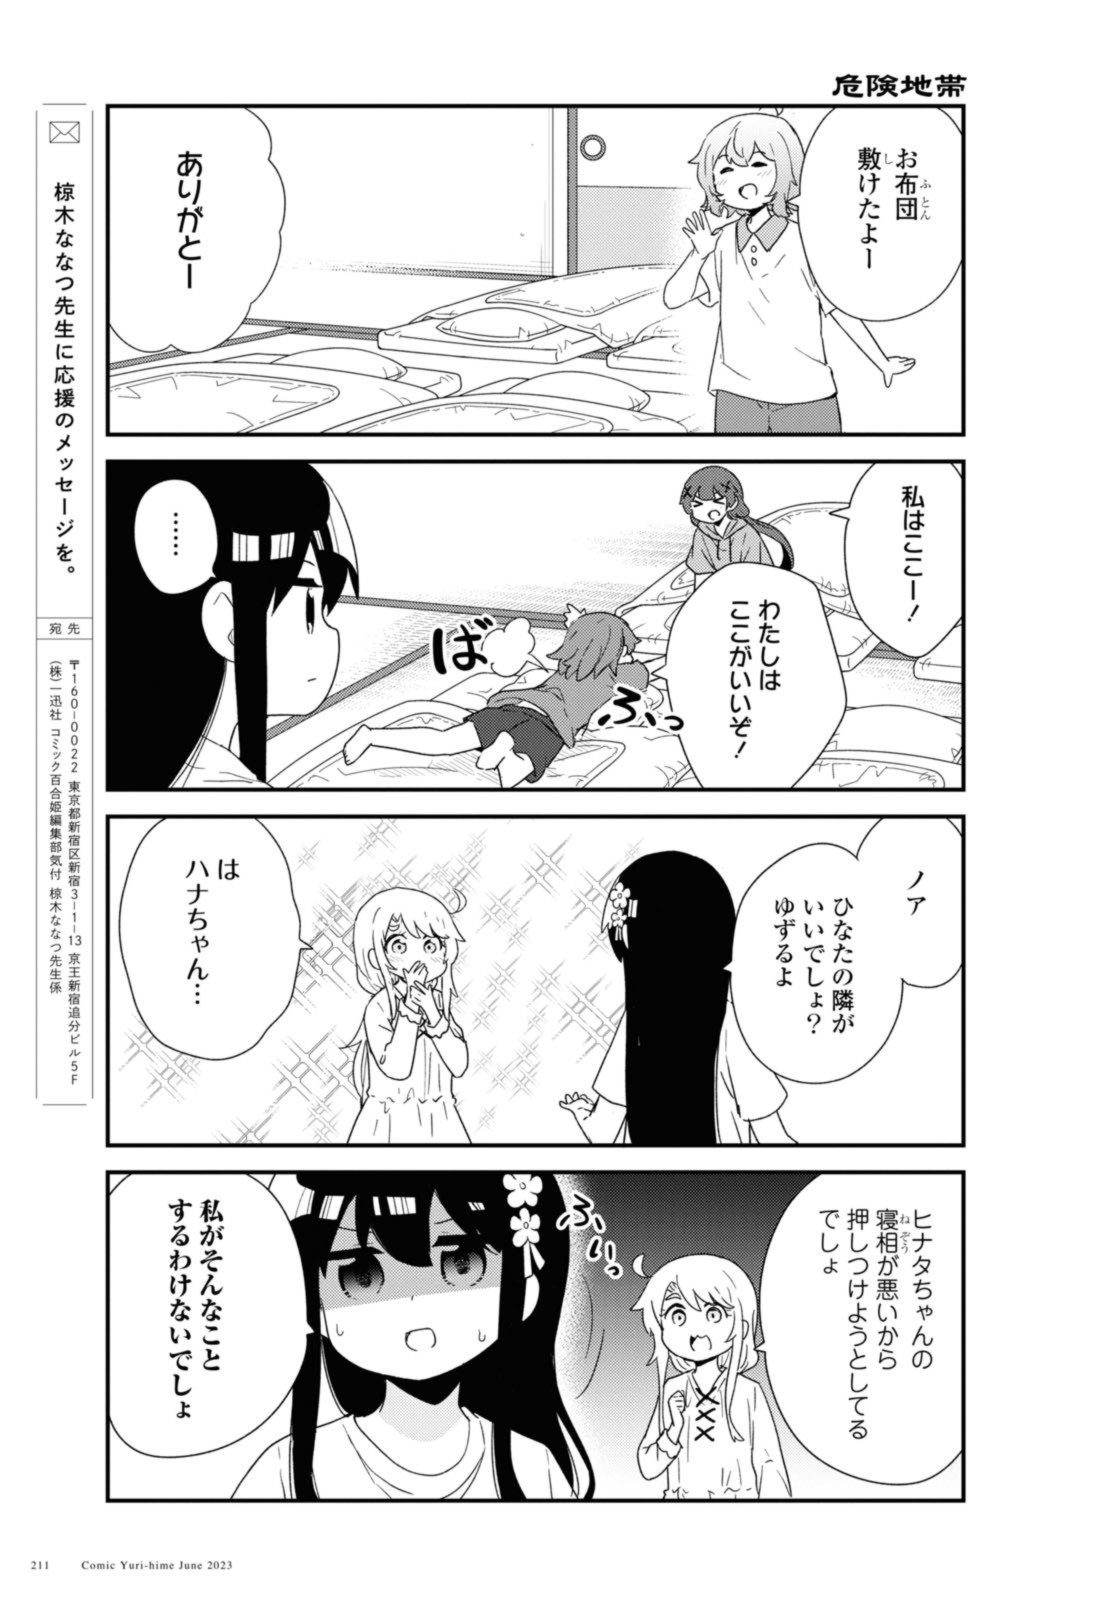 Watashi ni Tenshi ga Maiorita! - Chapter 106 - Page 11